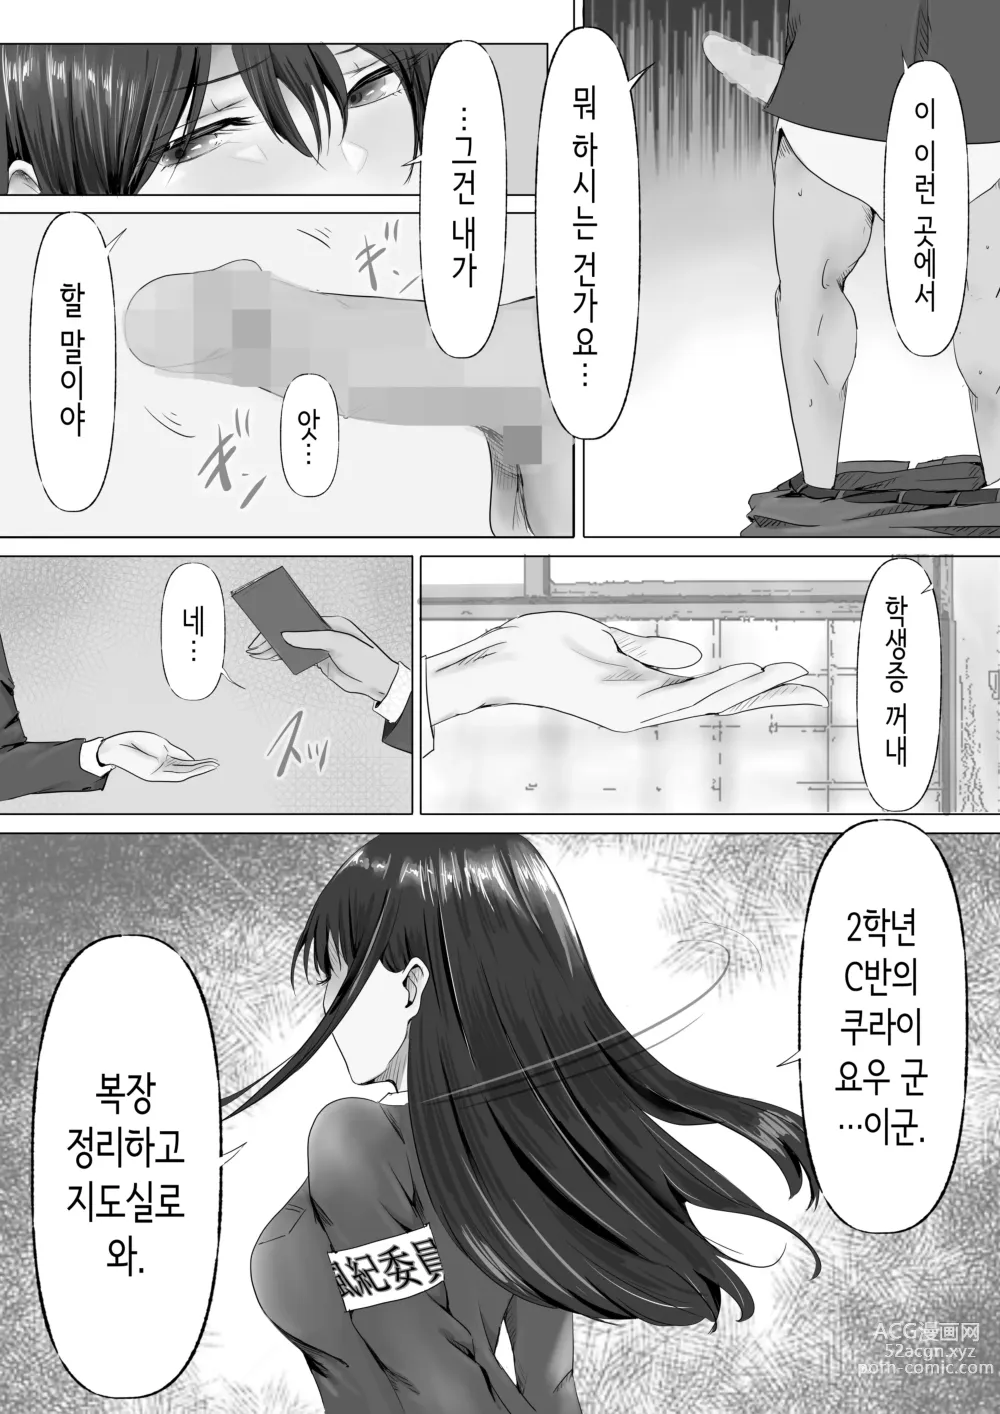 Page 10 of doujinshi 과묵하고 긴 흑발의 거유 풍기위원장을 미친듯이 따먹고 싶다